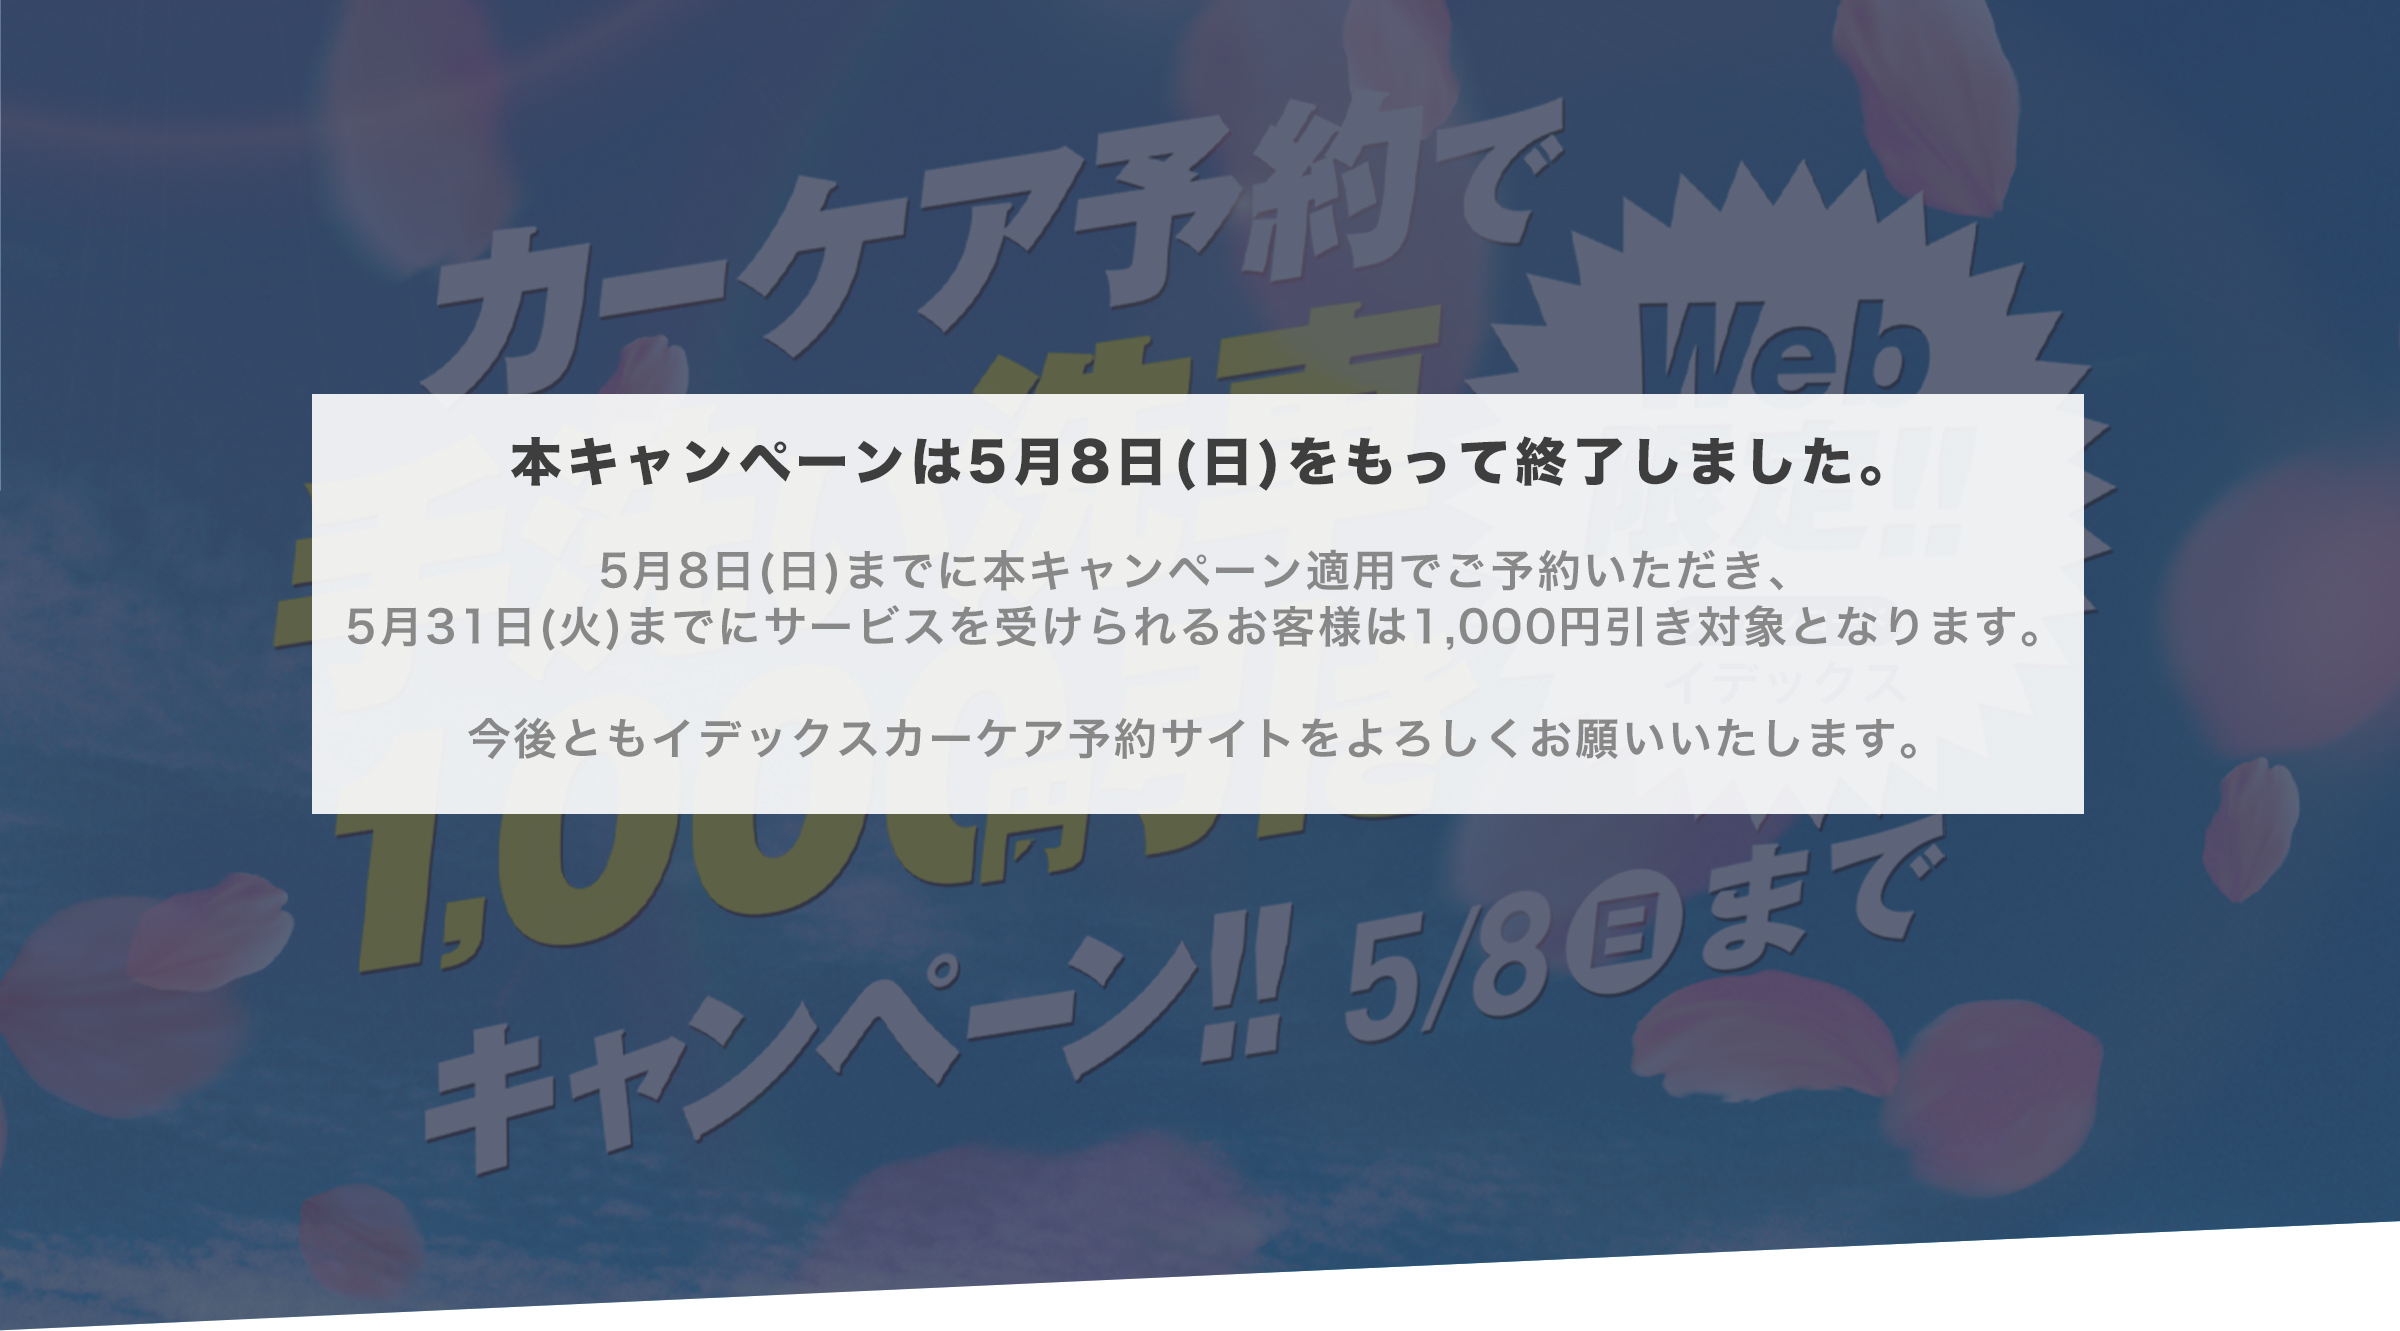 カーケア予約キャンペーン 手洗い洗車1,000円引き 7/30(金)→9/5(日)